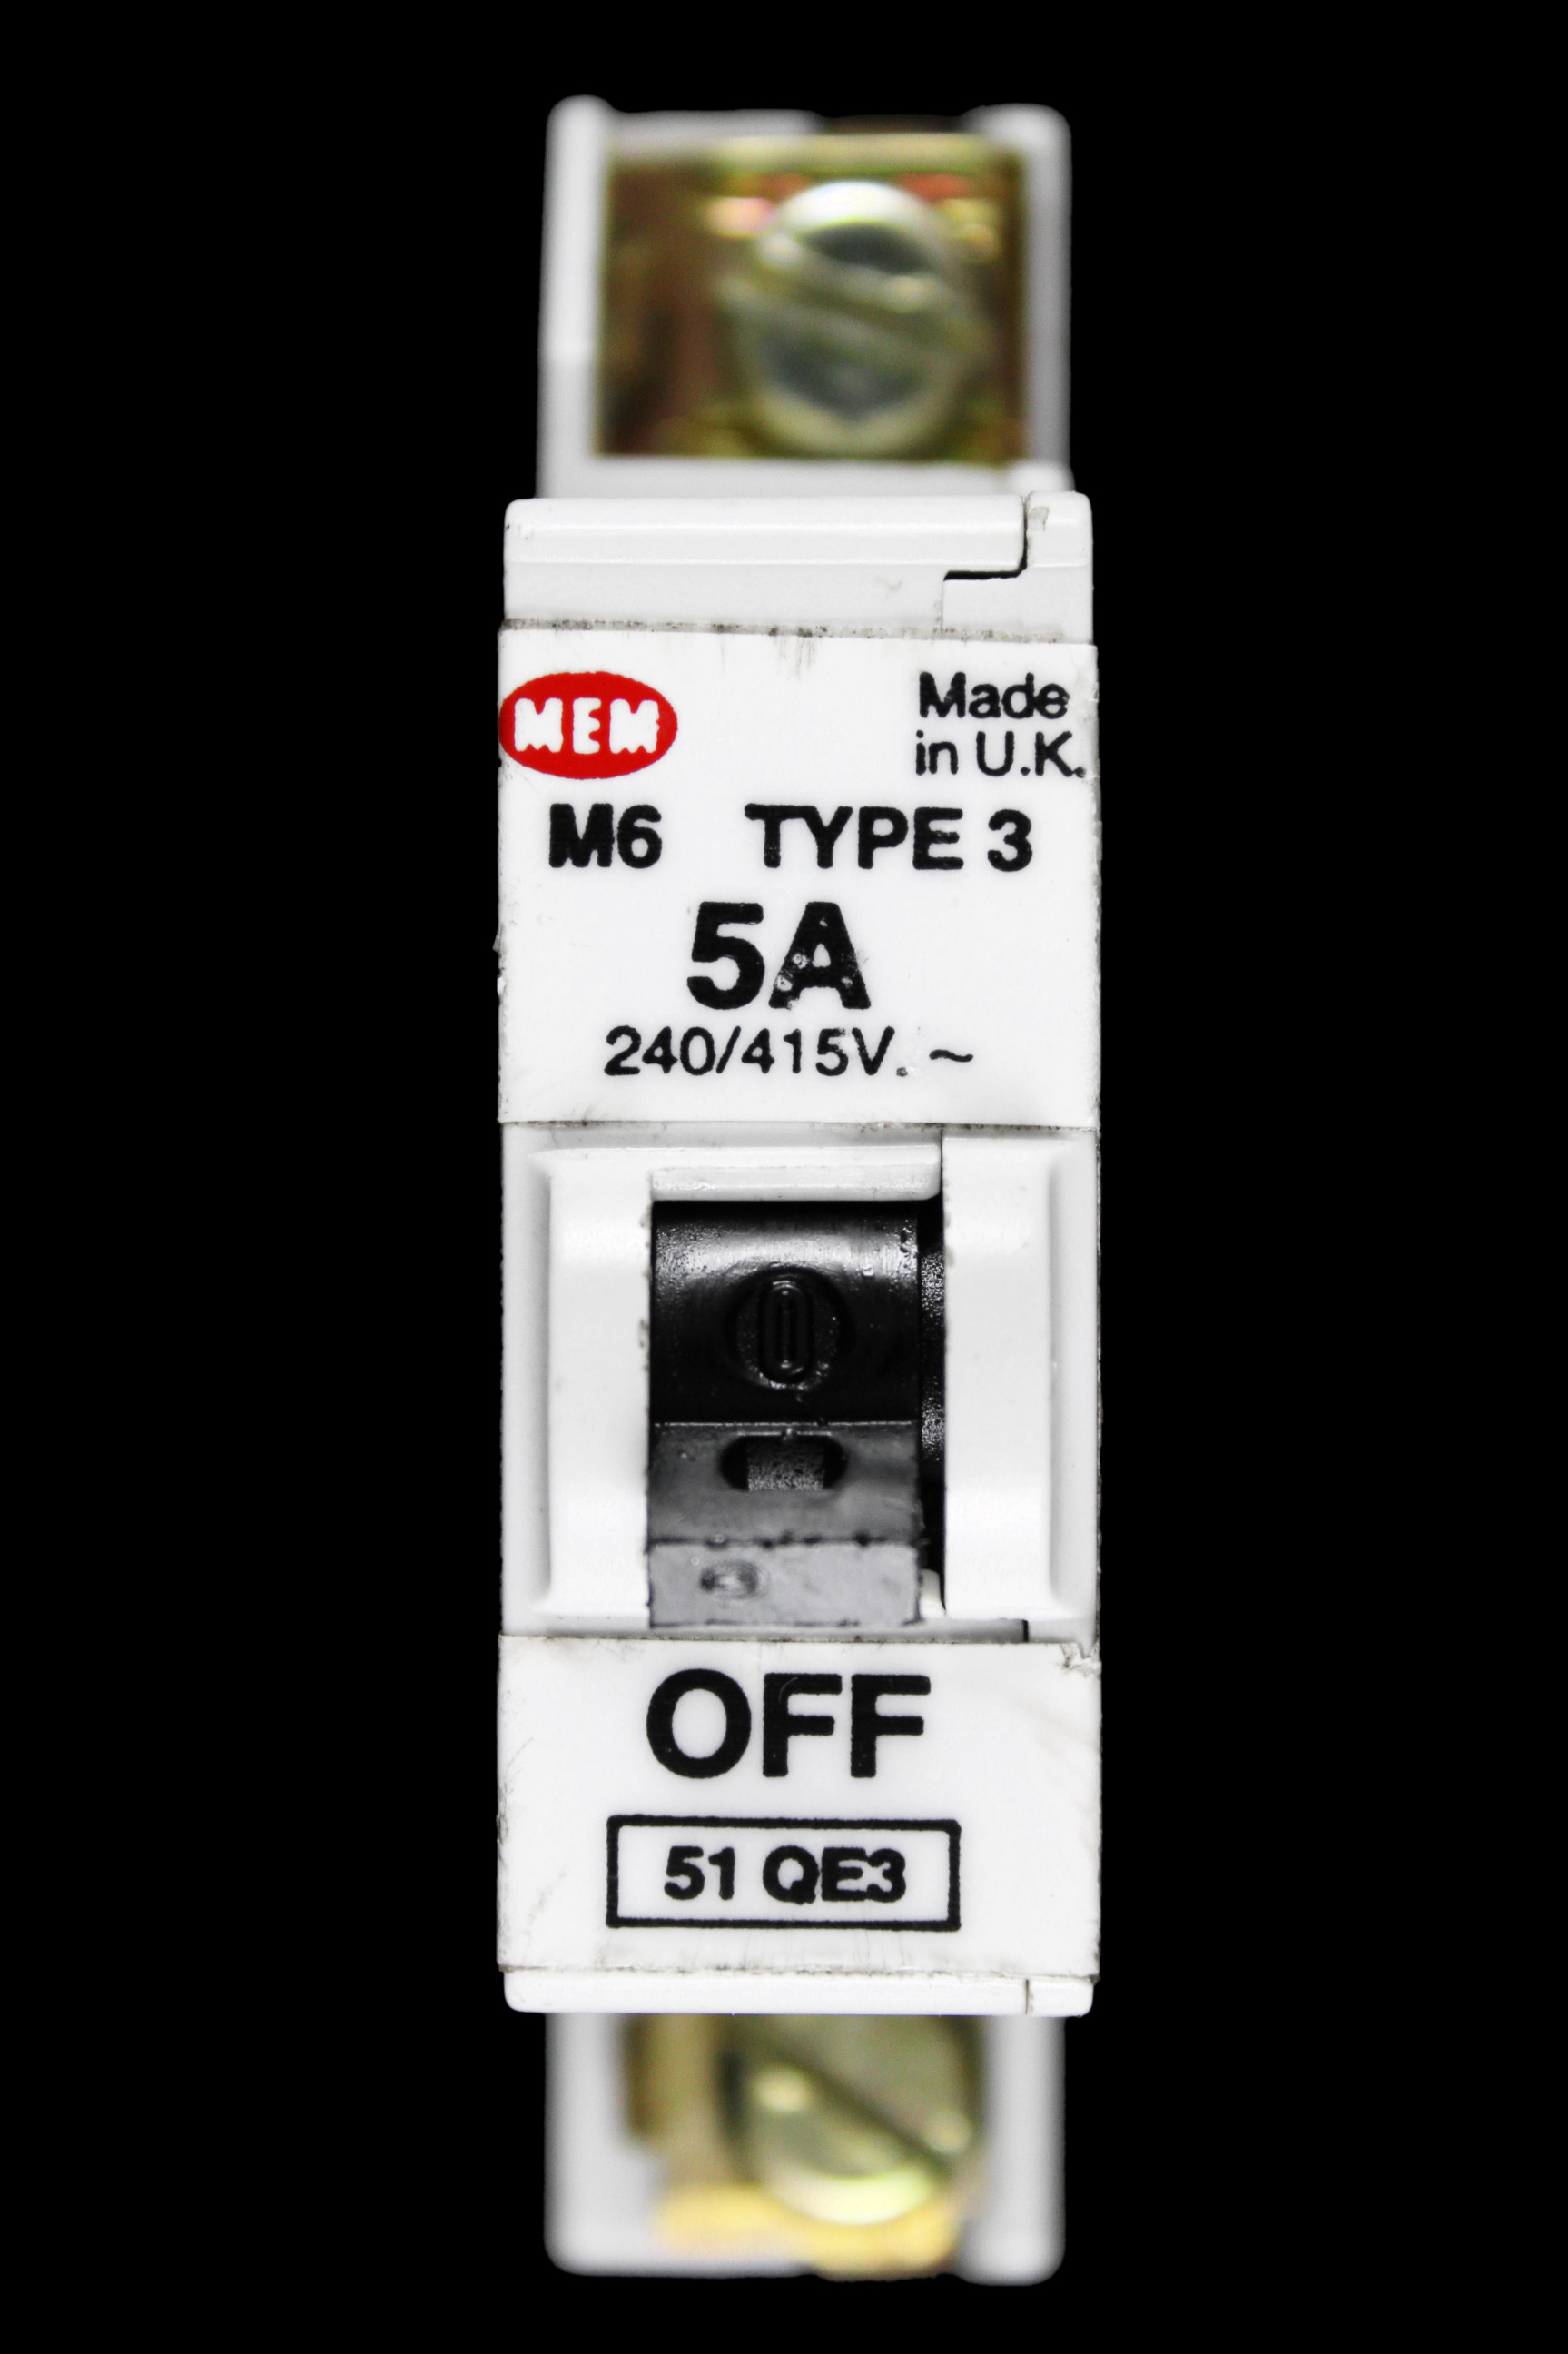 MEM 5 AMP TYPE 3 M6 MCB CIRCUIT BREAKER 51QE3